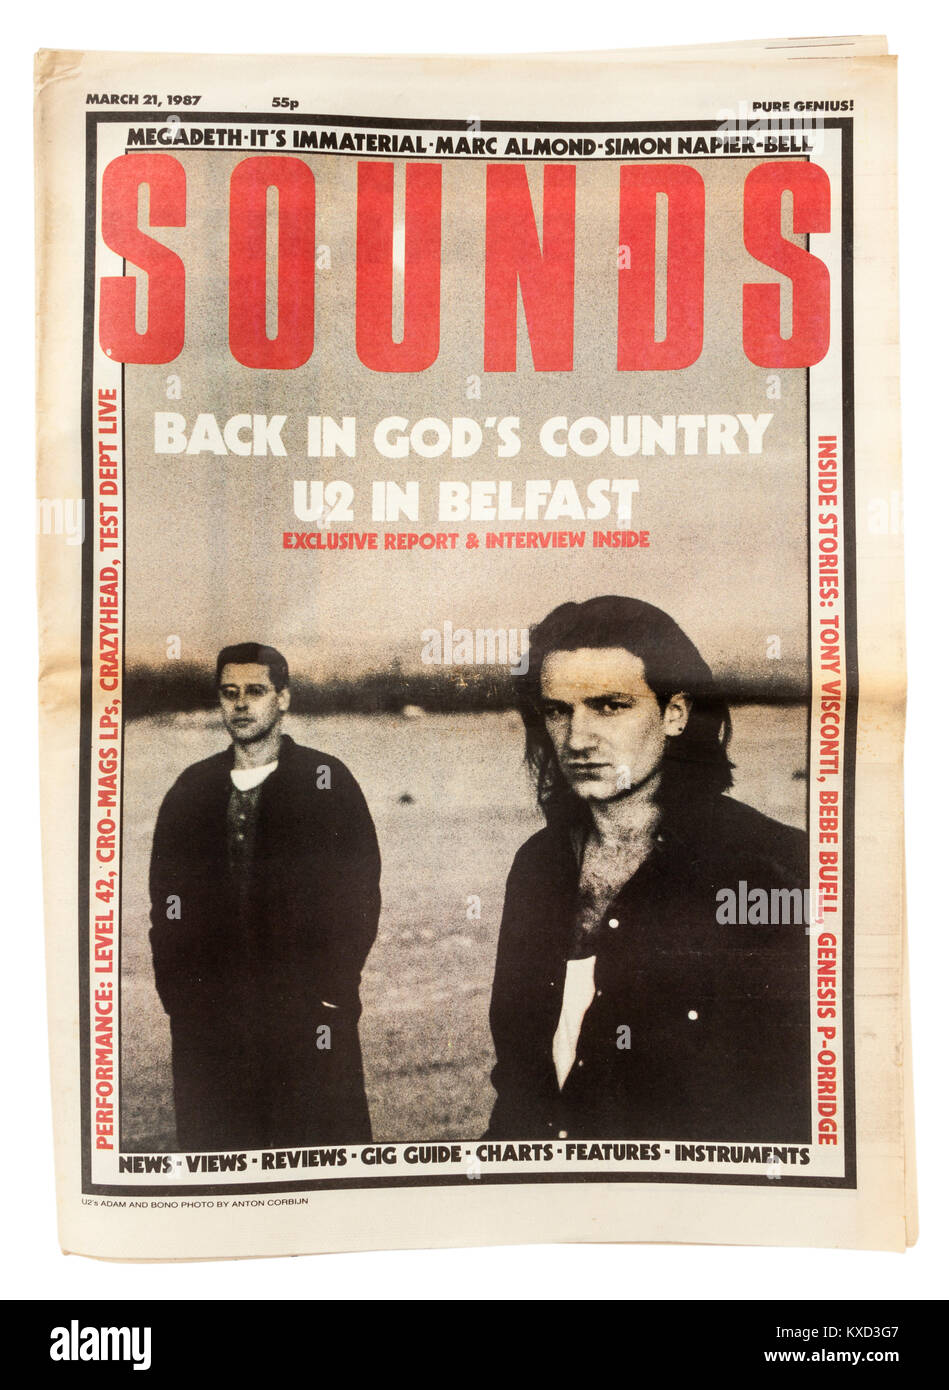 Wöchentliche British Sounds" Musik Zeitung vom 21. März 1987, mit Bono und Adam von U2 an der vorderen Abdeckung. Stockfoto